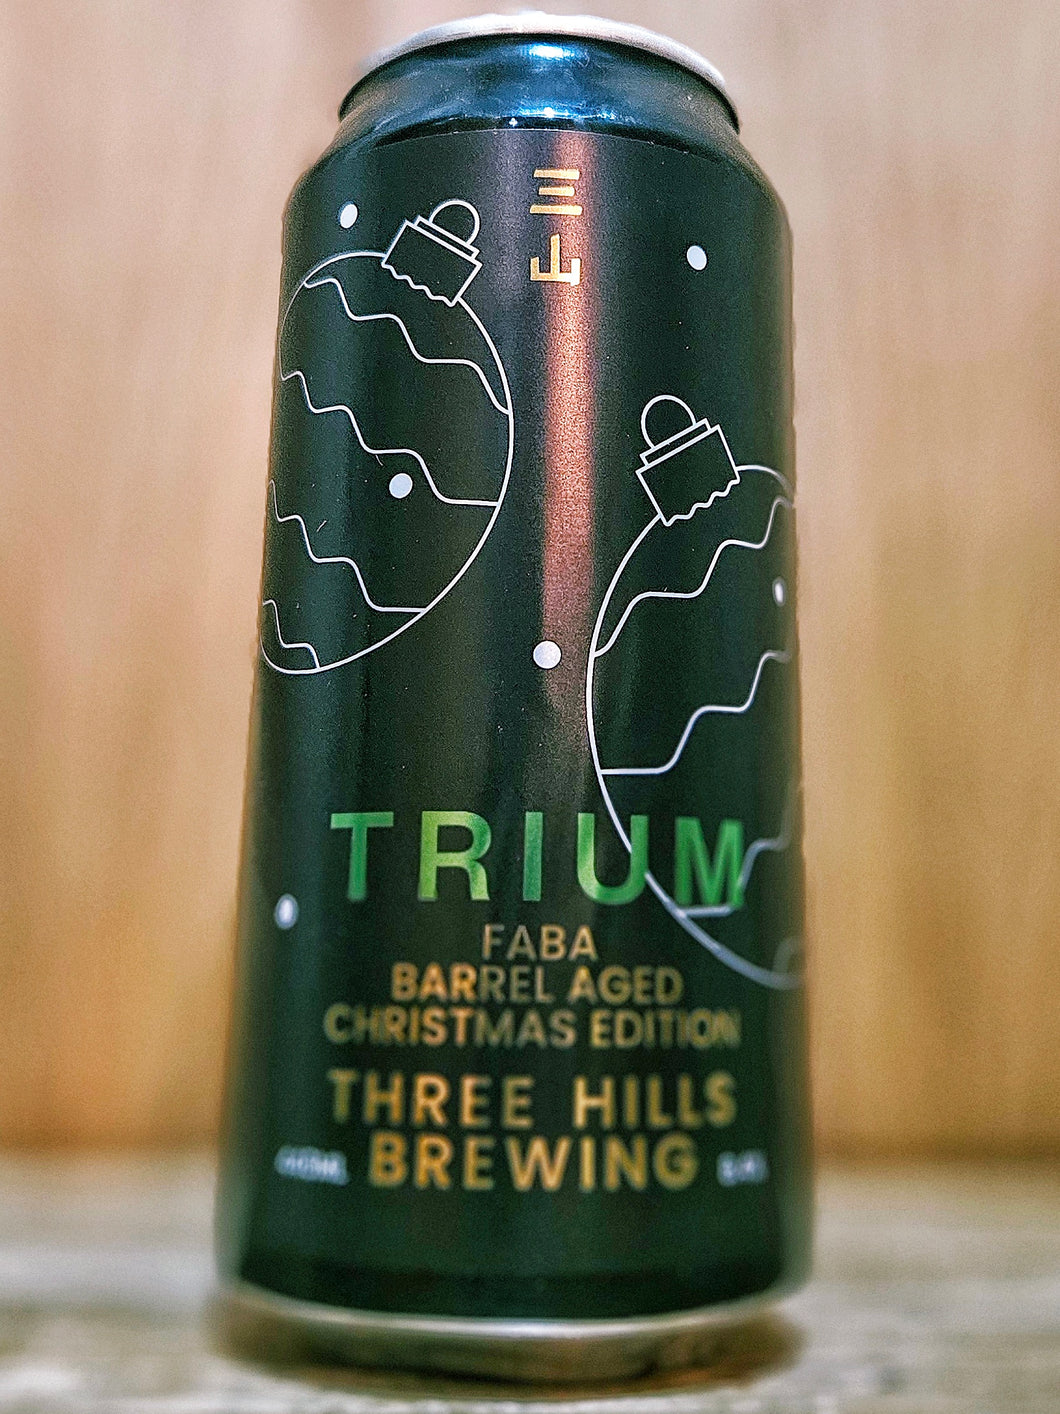 Three Hills Brewing - Trium Faba Barrel Aged Christmas Edition